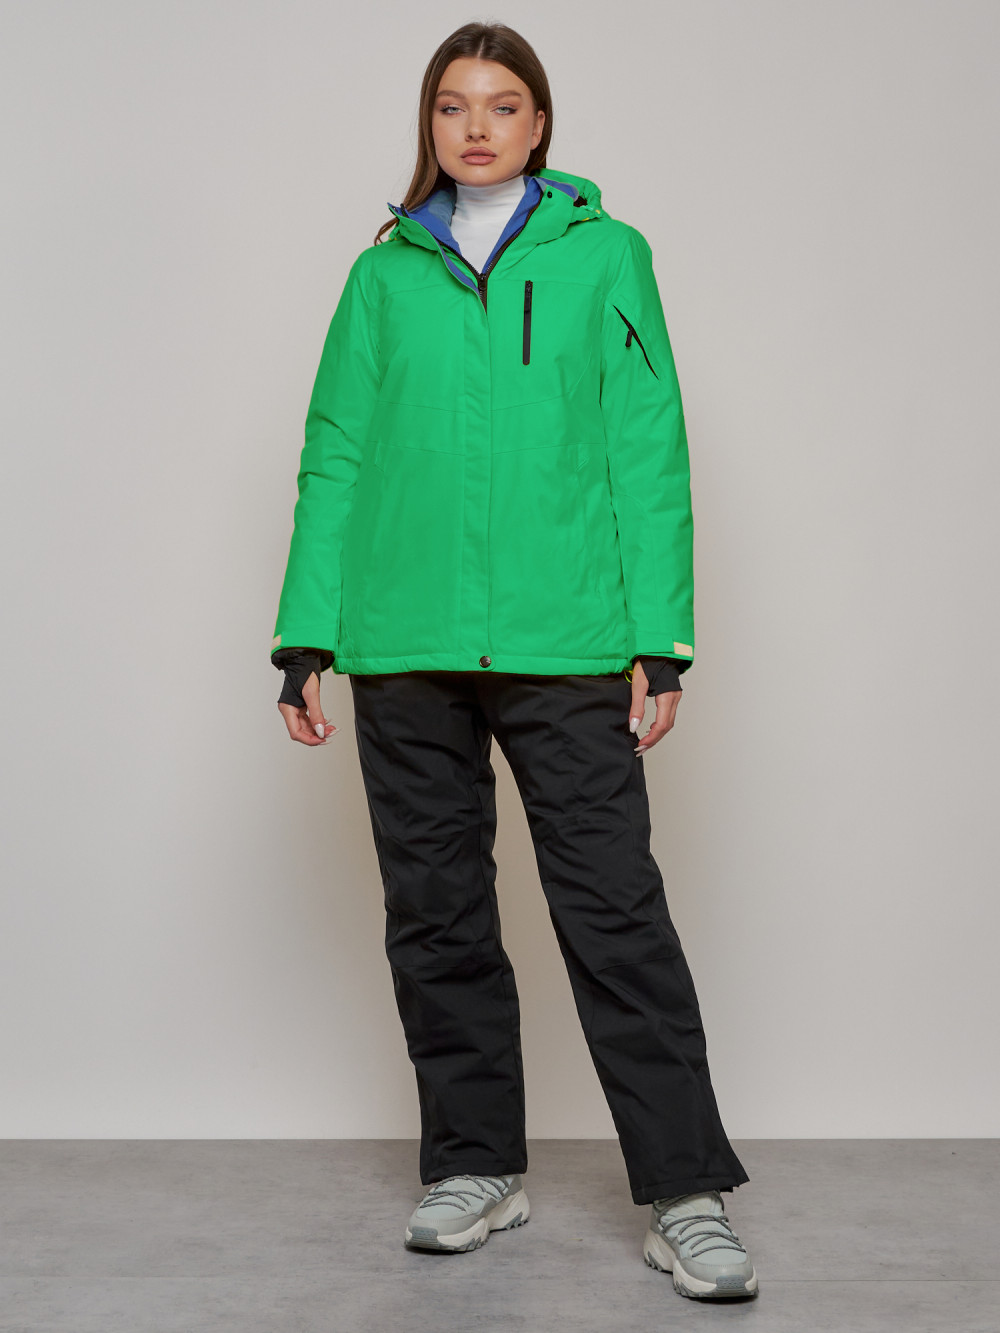 Горнолыжный костюм женский зимний MTFORCE 005Z, 46, зеленый/черный